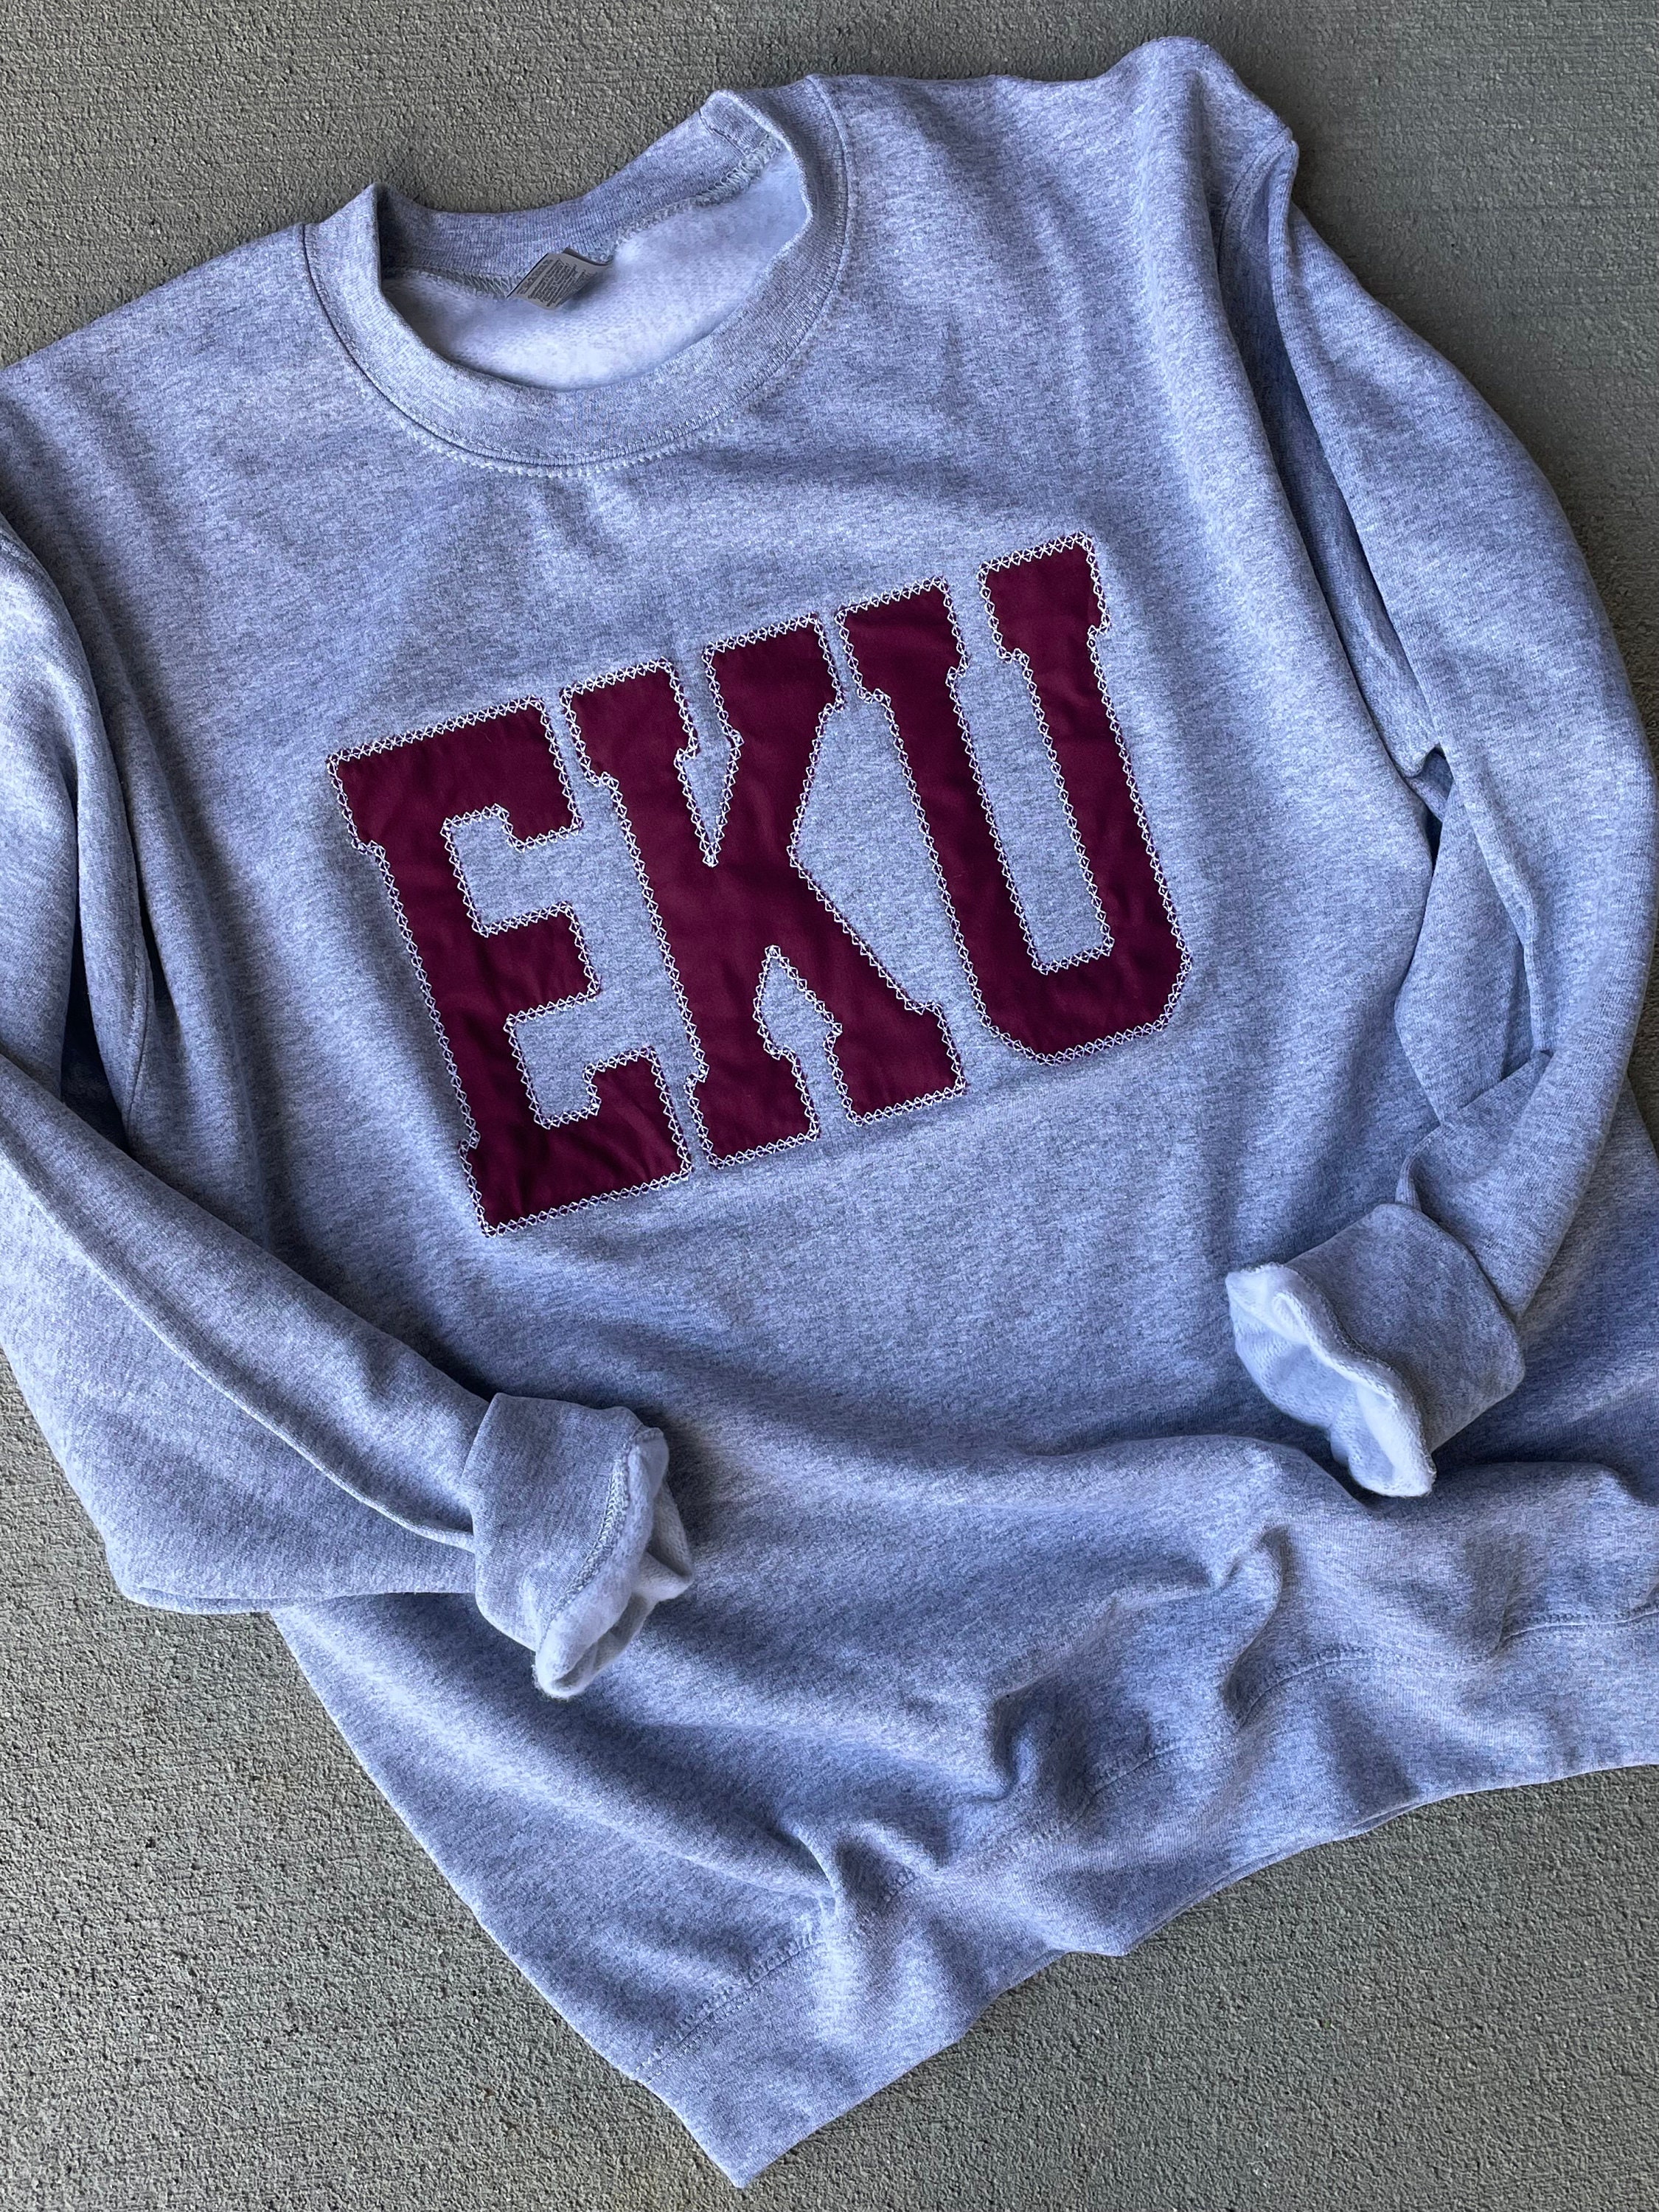 The Vintage EKU Crewneck Sweatshirt